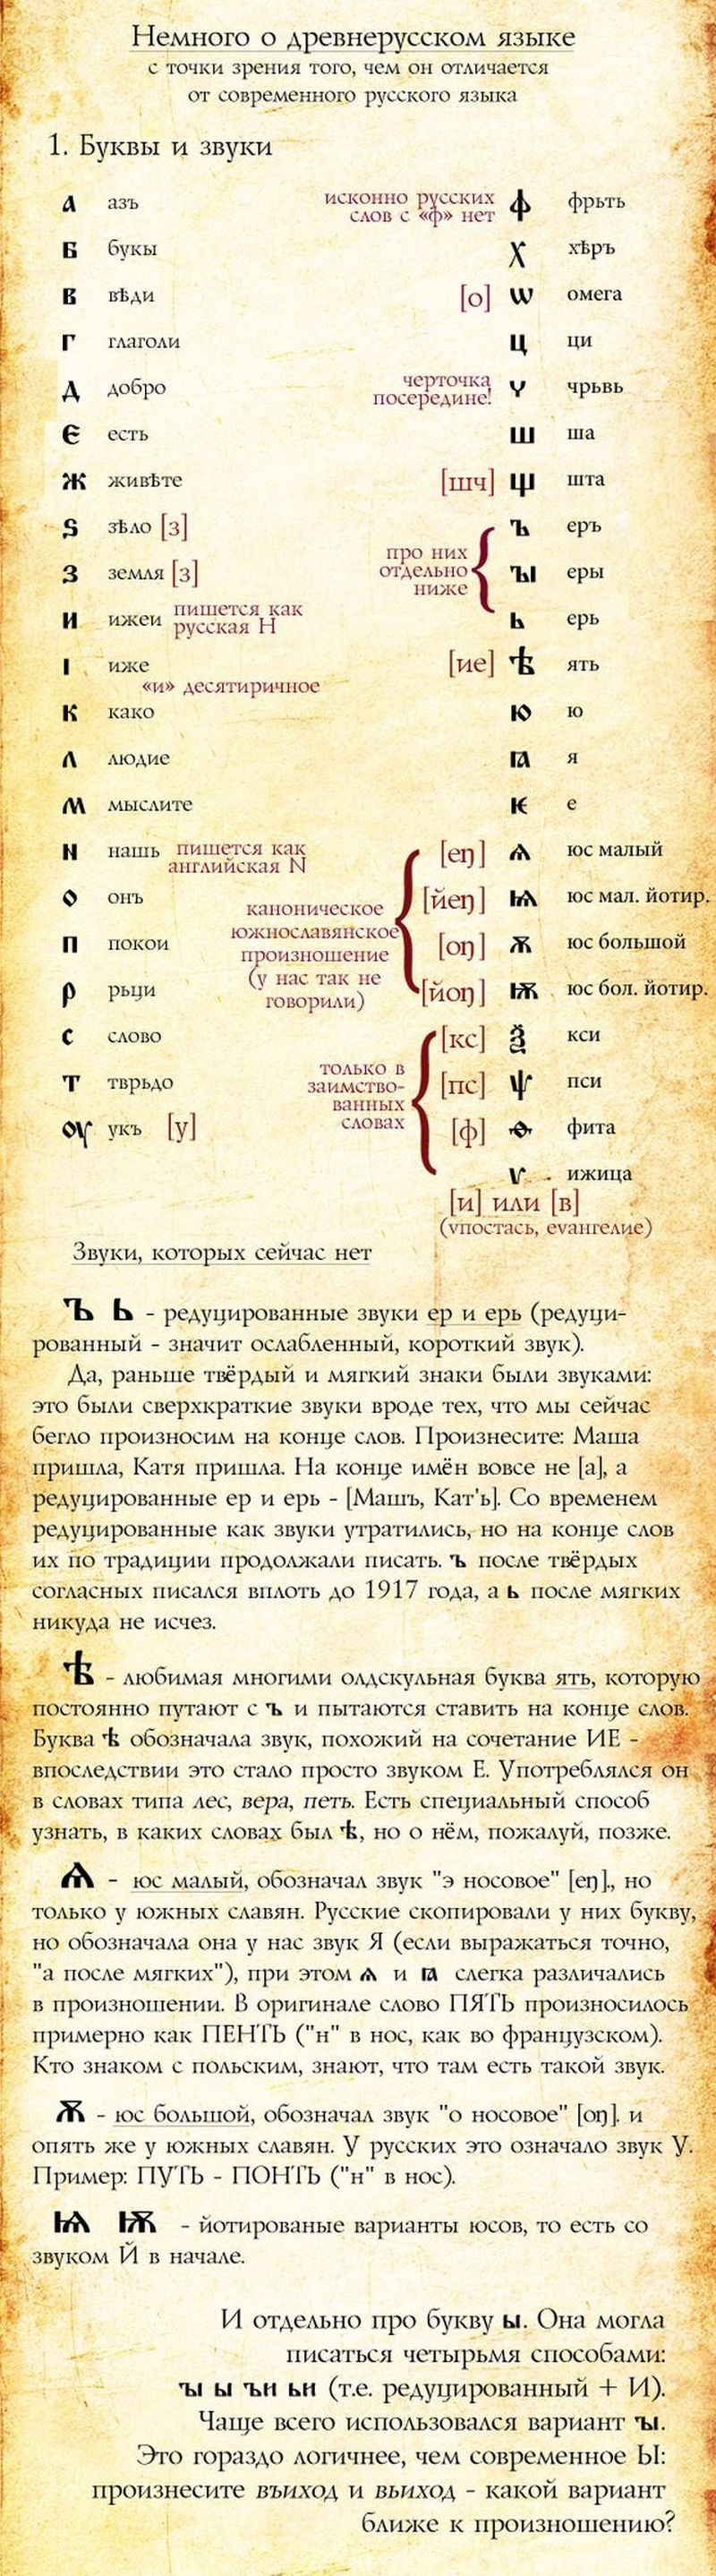 Русский язык и его история